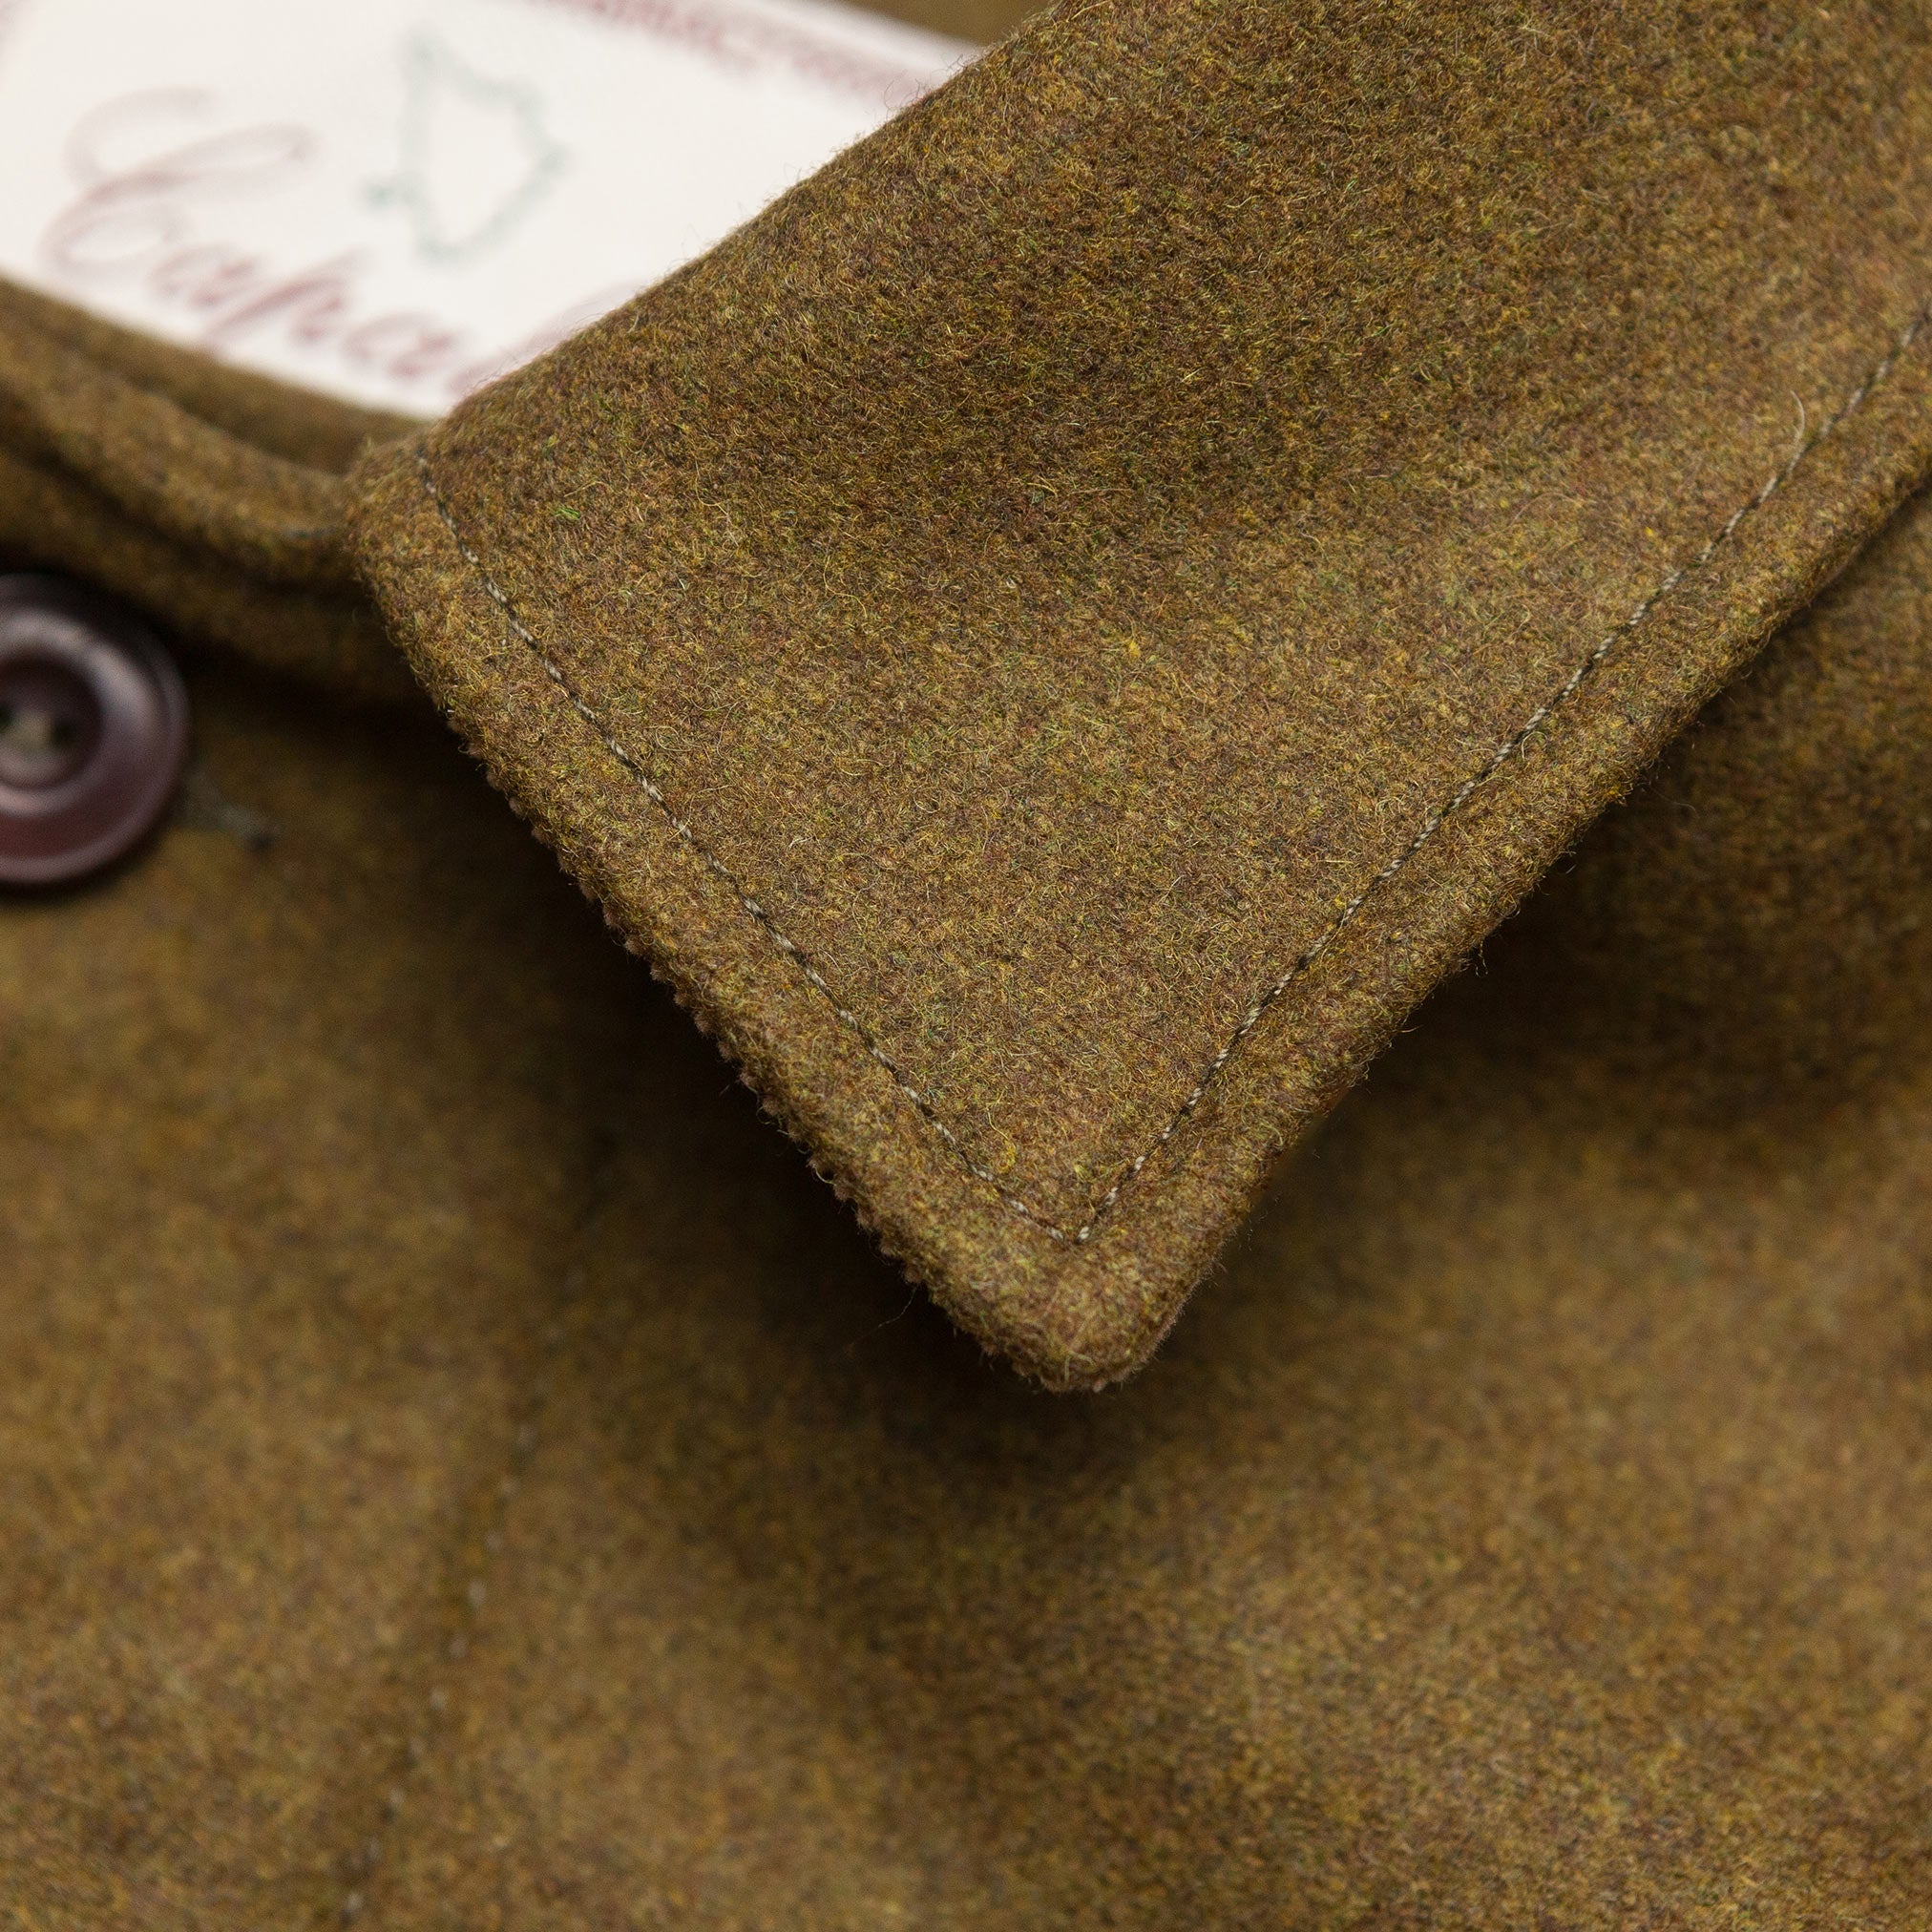 Field Jacket in Olive Wool